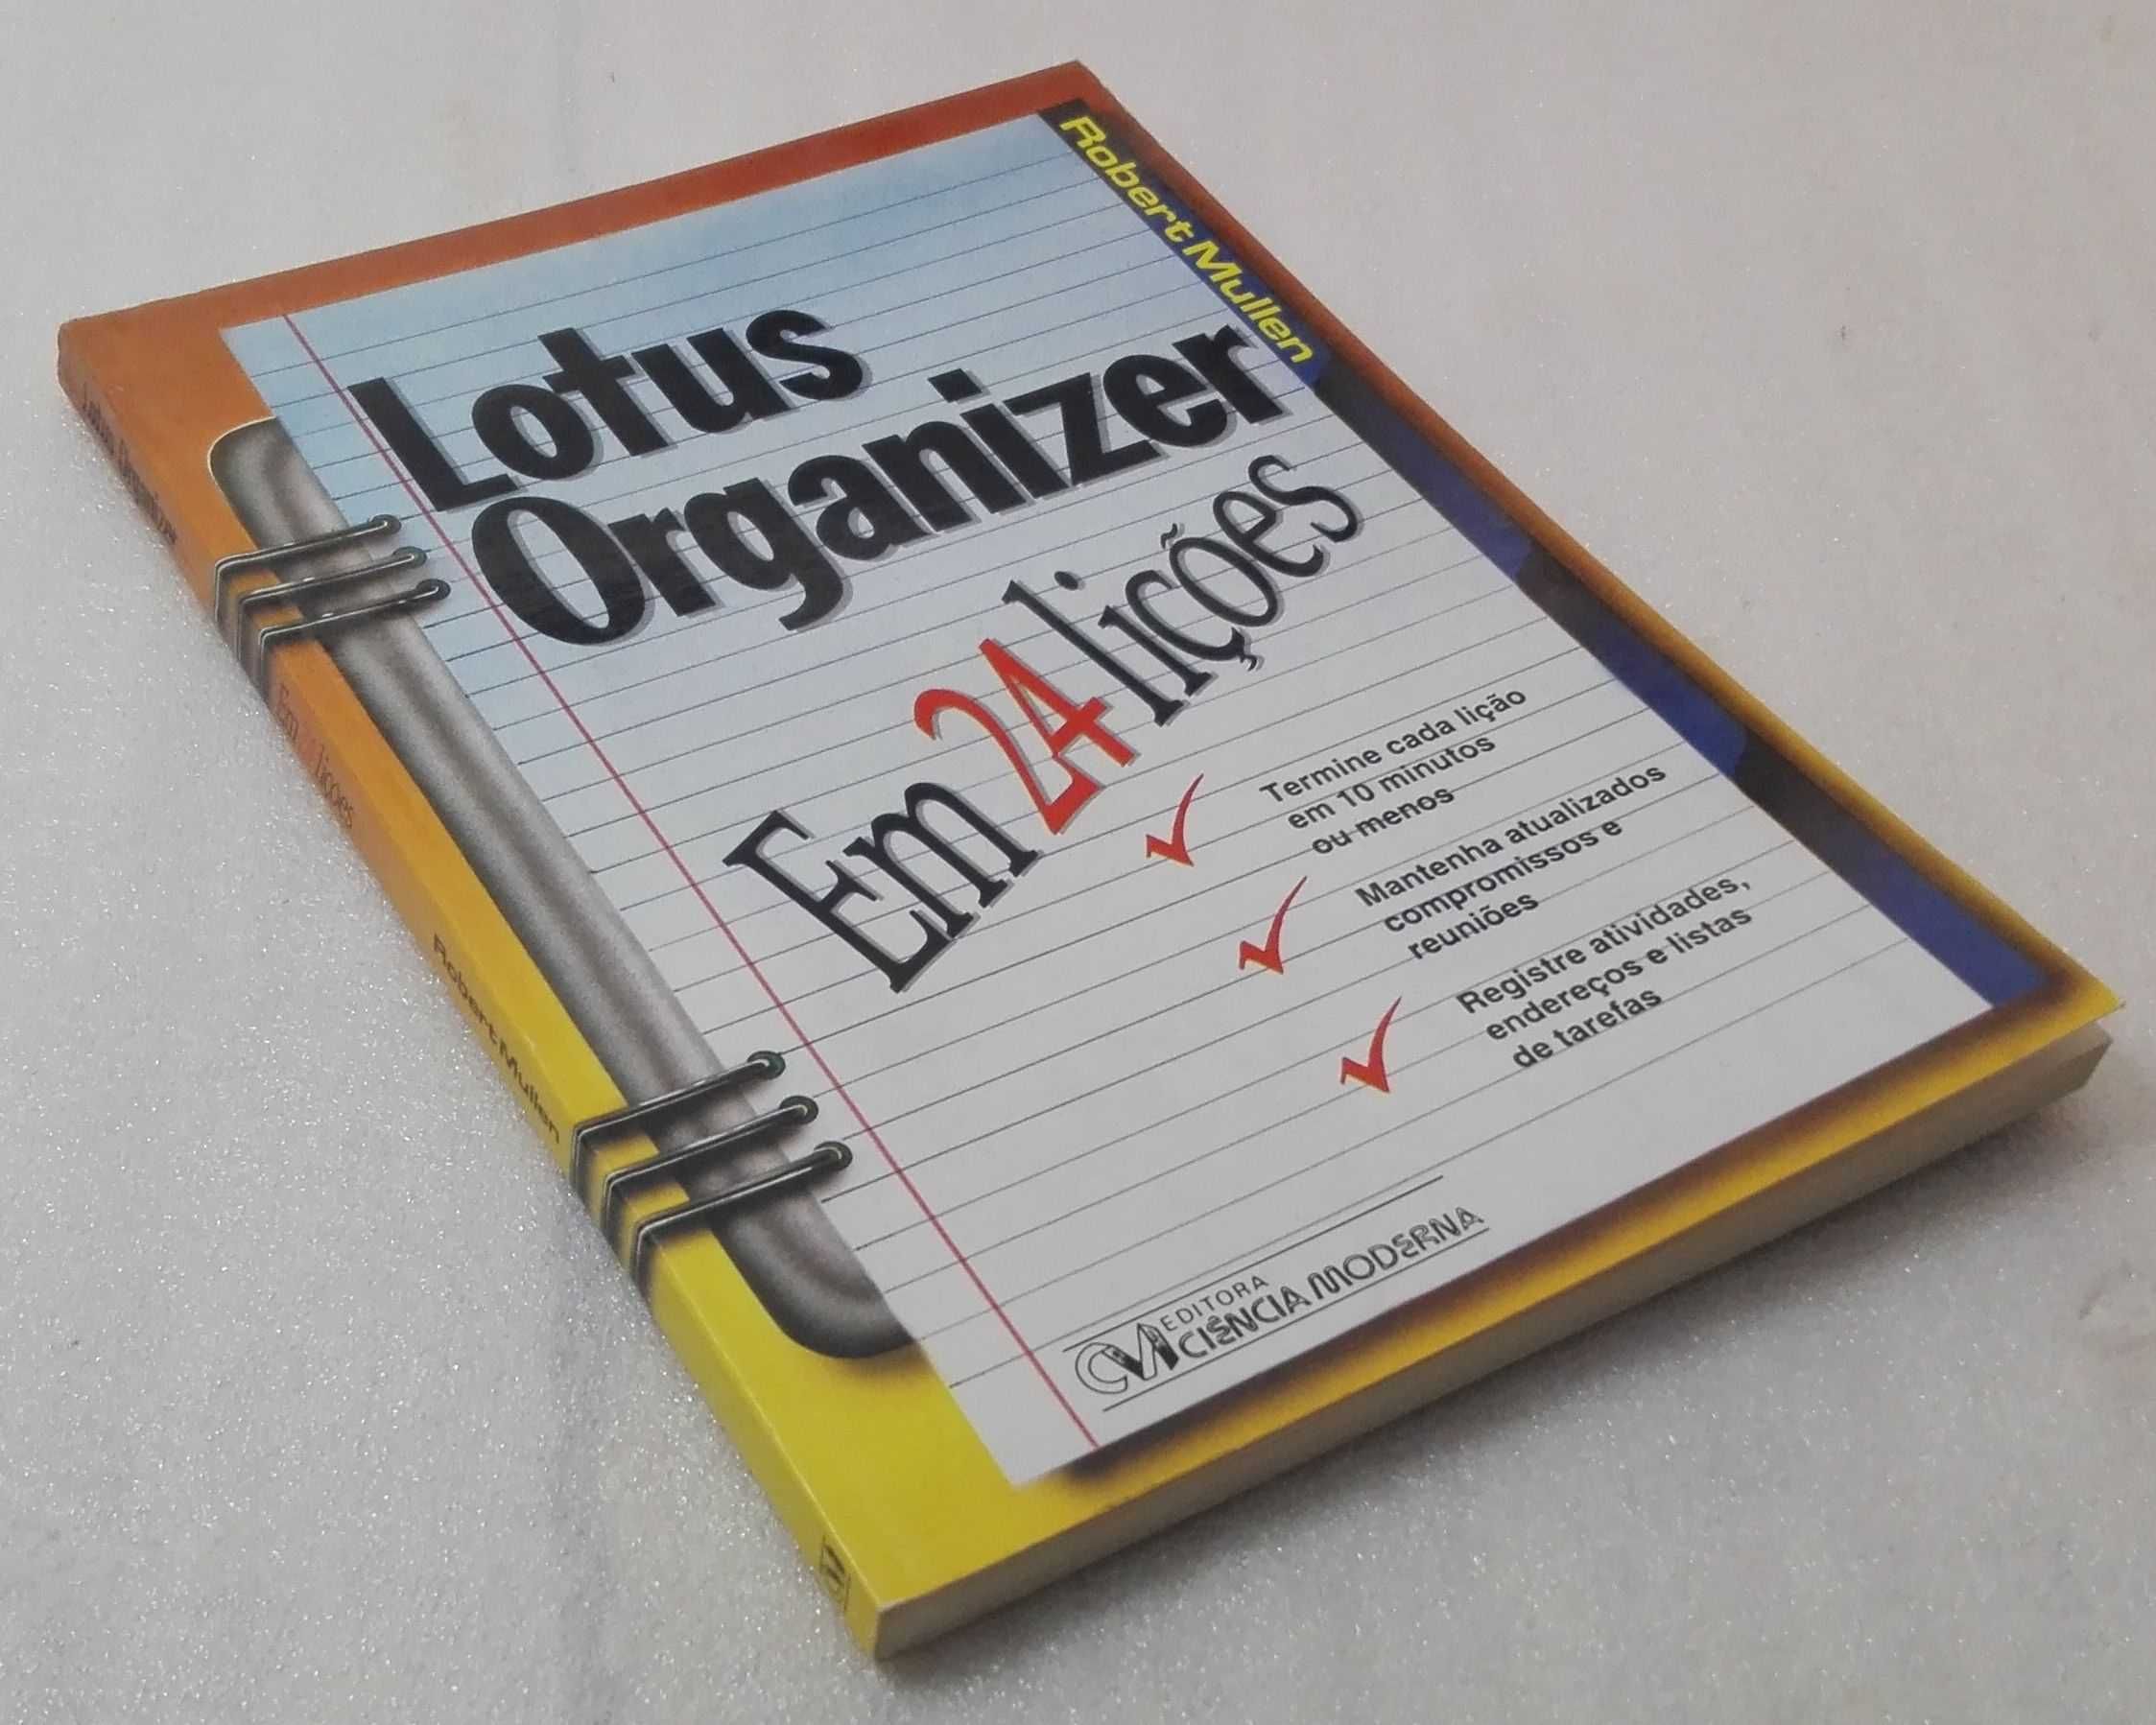 Livro Lotus Organizer em 24 Lições